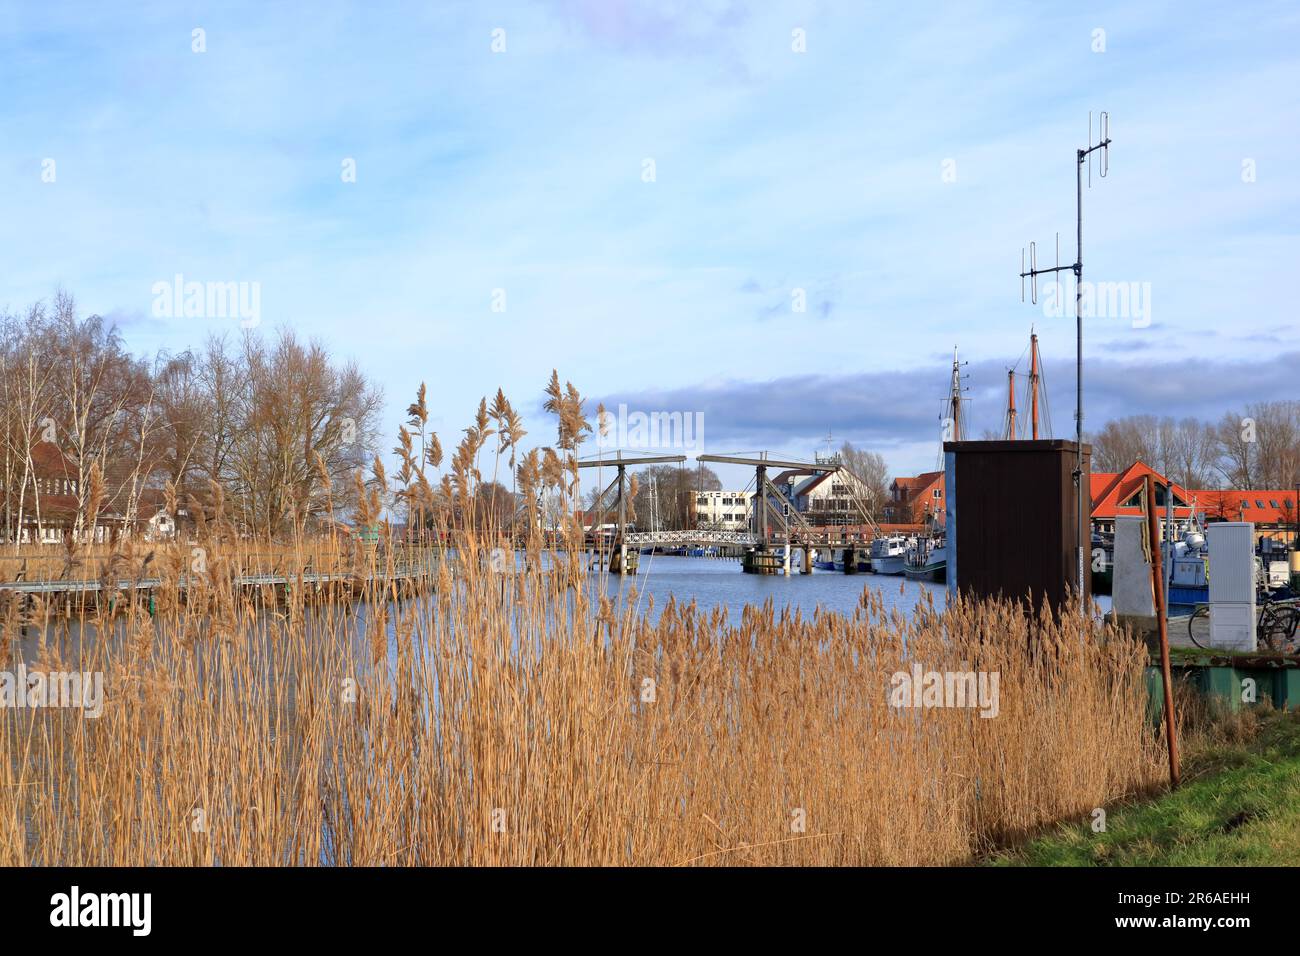 Januar 28 2023 - Wieck, Greifswald in Deutschland: Die Hafenbrücke des schönen Dorfes im Winter Stockfoto